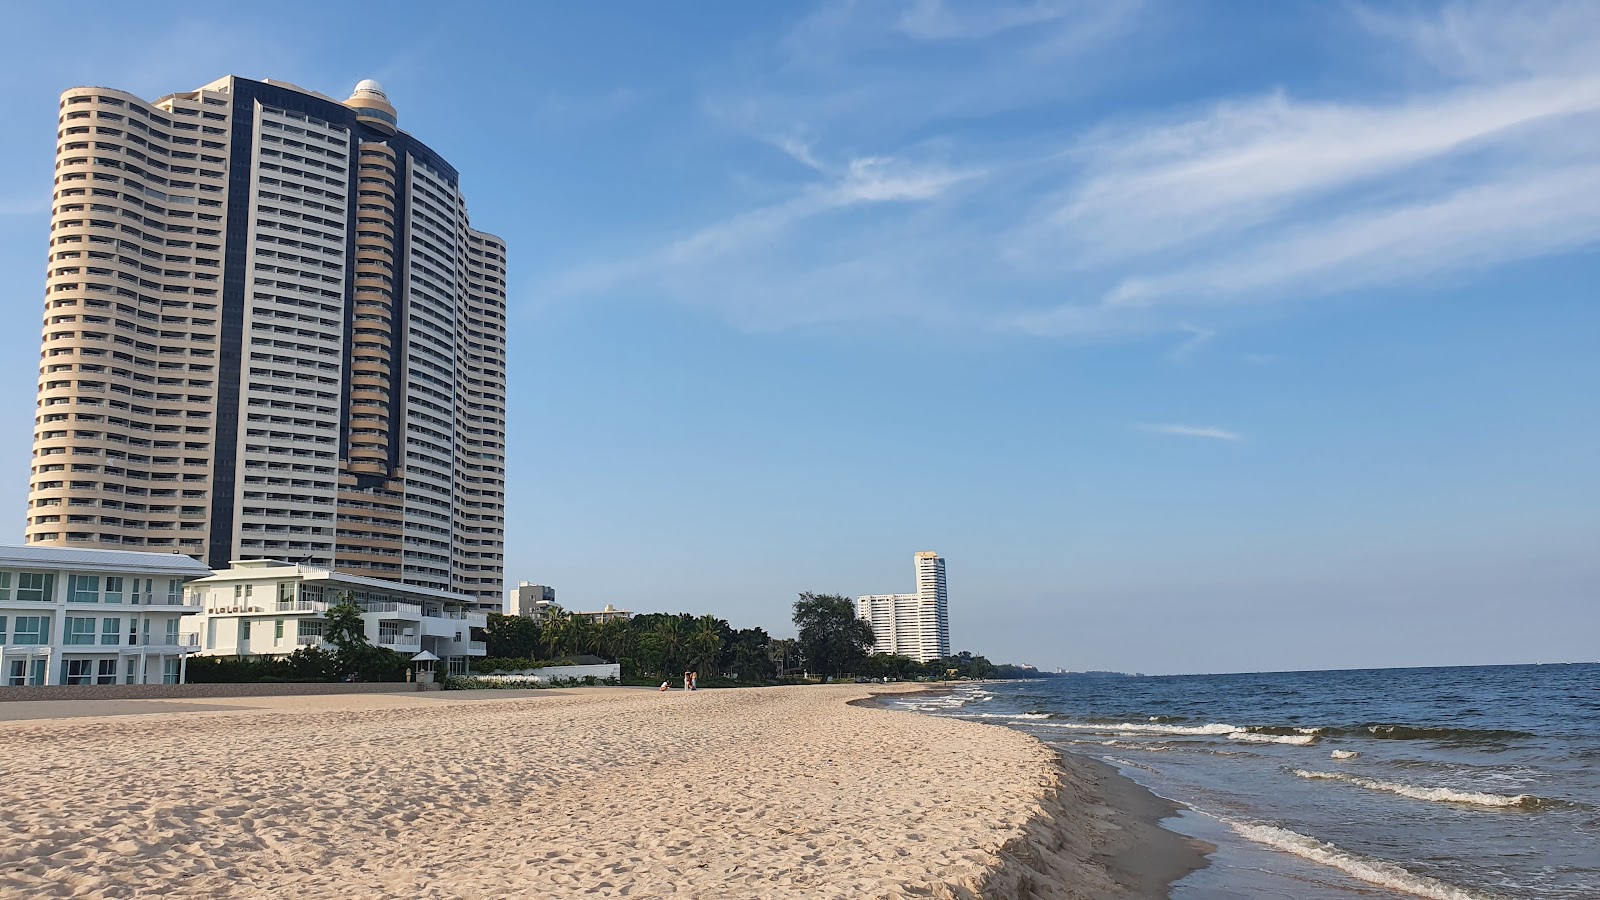 Zdjęcie Springfield Beach - popularne miejsce wśród znawców relaksu